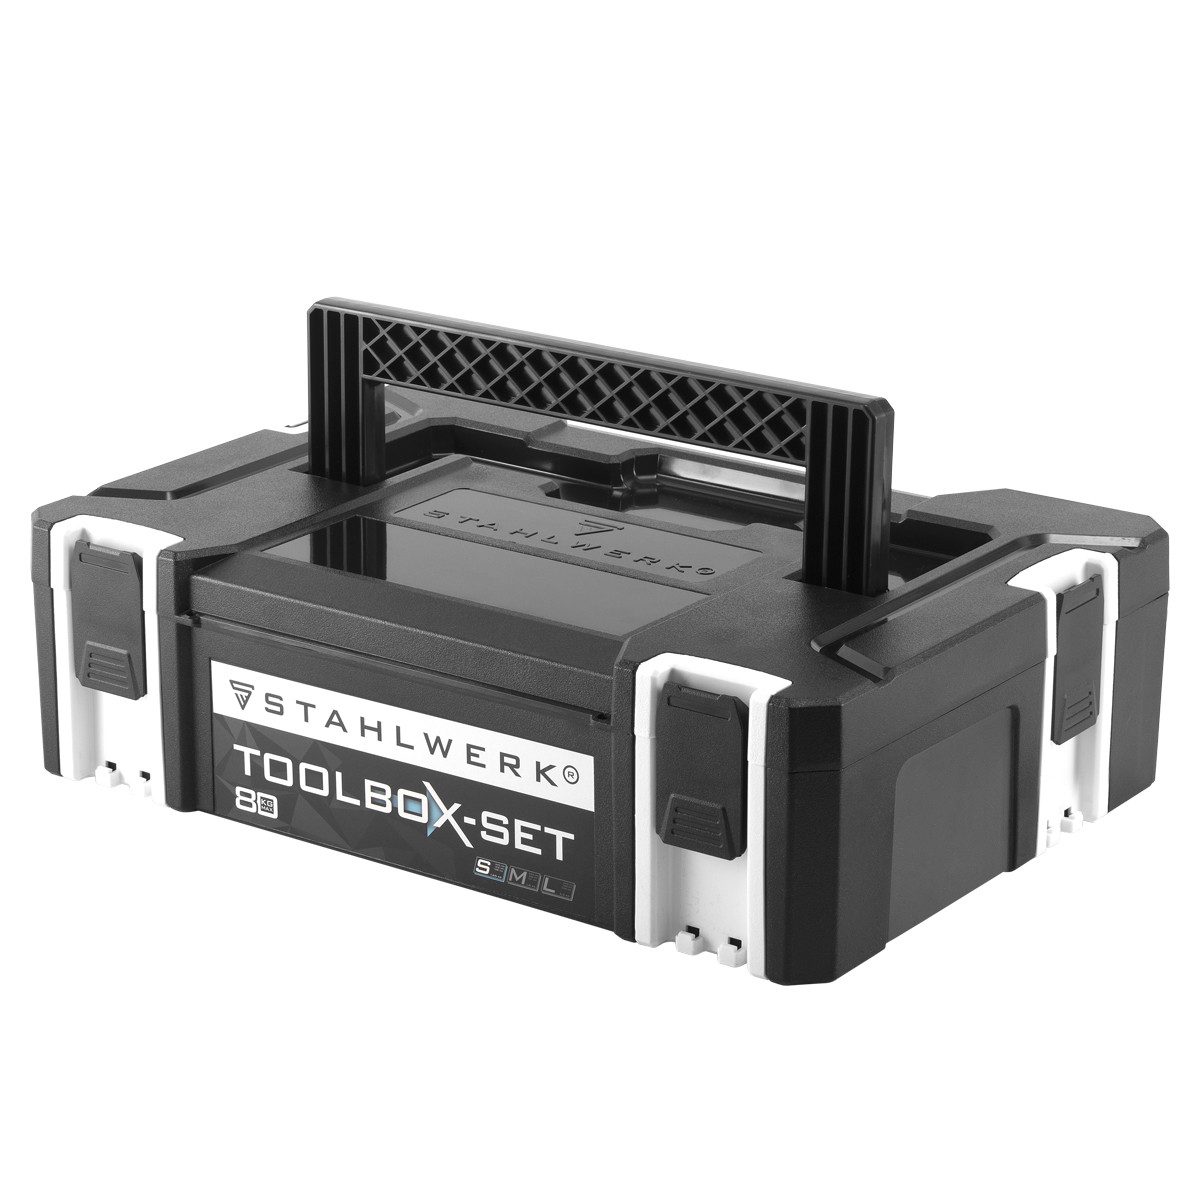 STAHLWERK Werkzeugbox Universal Toolbox Größe S 443 x 310 x 128 mm, stapelbare Systembox / Werkzeugkiste / Werkzeugkoffer mit Tragegriff